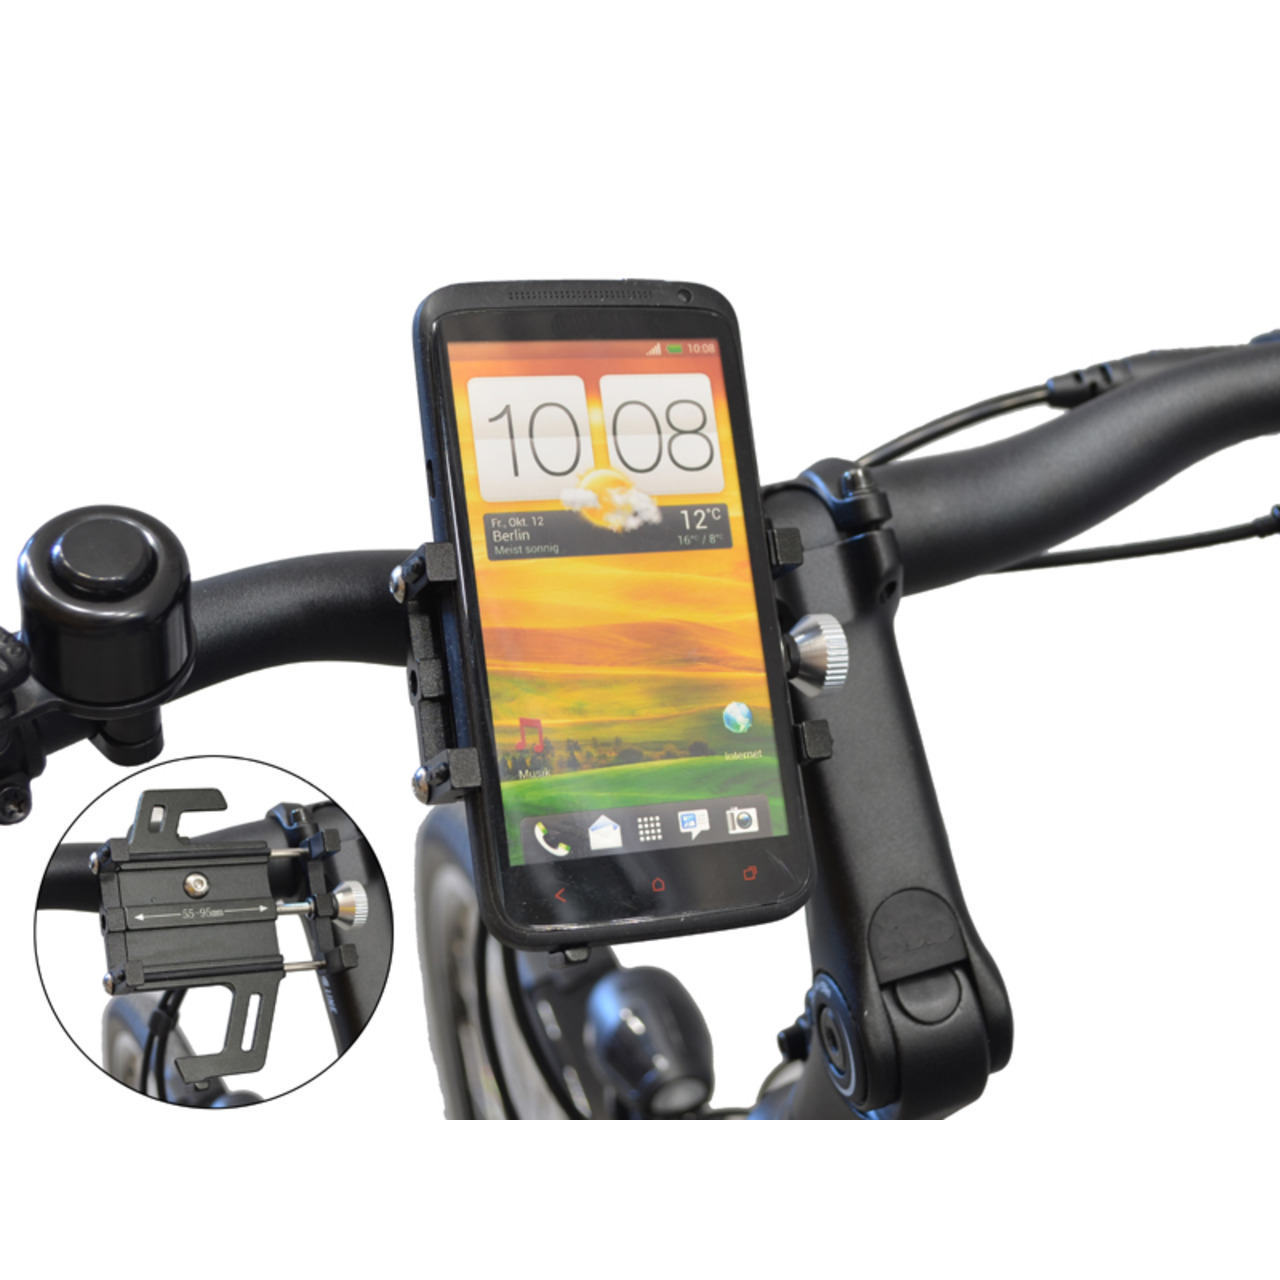 Filmer Fahrrad-Smartphonehalterung 49800- 55 - 95 mm Smartphone-Breite- mit Stossdämpfung- Aluminium unter Freizeit- und Outdoortechnik